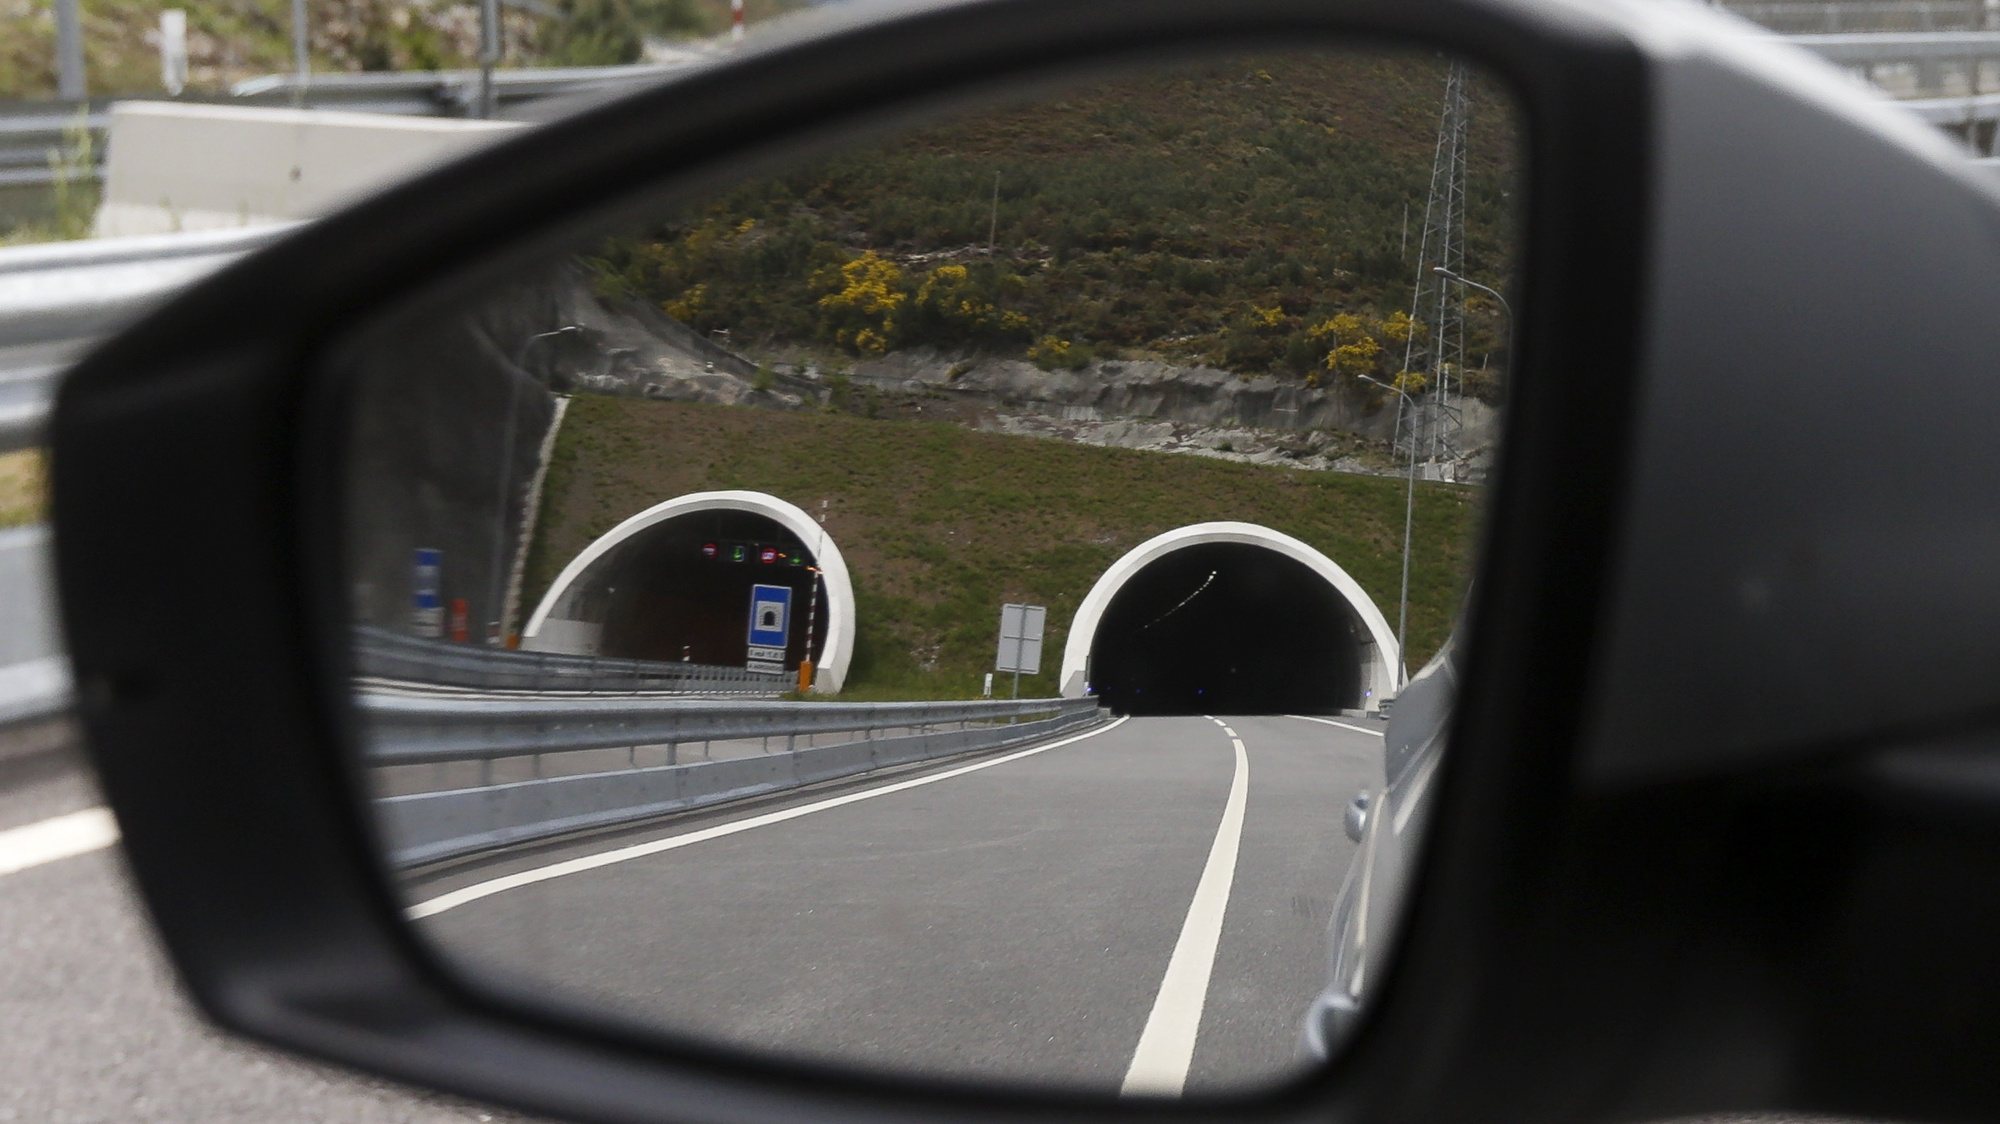 O Túnel do Marão, aberto há um ano, ajudou a minimizar o impacto da interioridade em Vila Real, a atrair empresas e passou a ser a principal opção dos utentes nas deslocações para o Litoral, Vila Real, 4 de maio de 2017. A Autoestrada do Marão concluiu o prolongamento da A4 de Amarante até Vila Real, inclui um túnel rodoviário de 5,6 quilómetros e abriu ao trânsito a 08 de maio de 2016. (ACOMPANHA TEXTO DO DIA 6 DE MAIO DE 2017). JOSÉ COELHO/LUSA